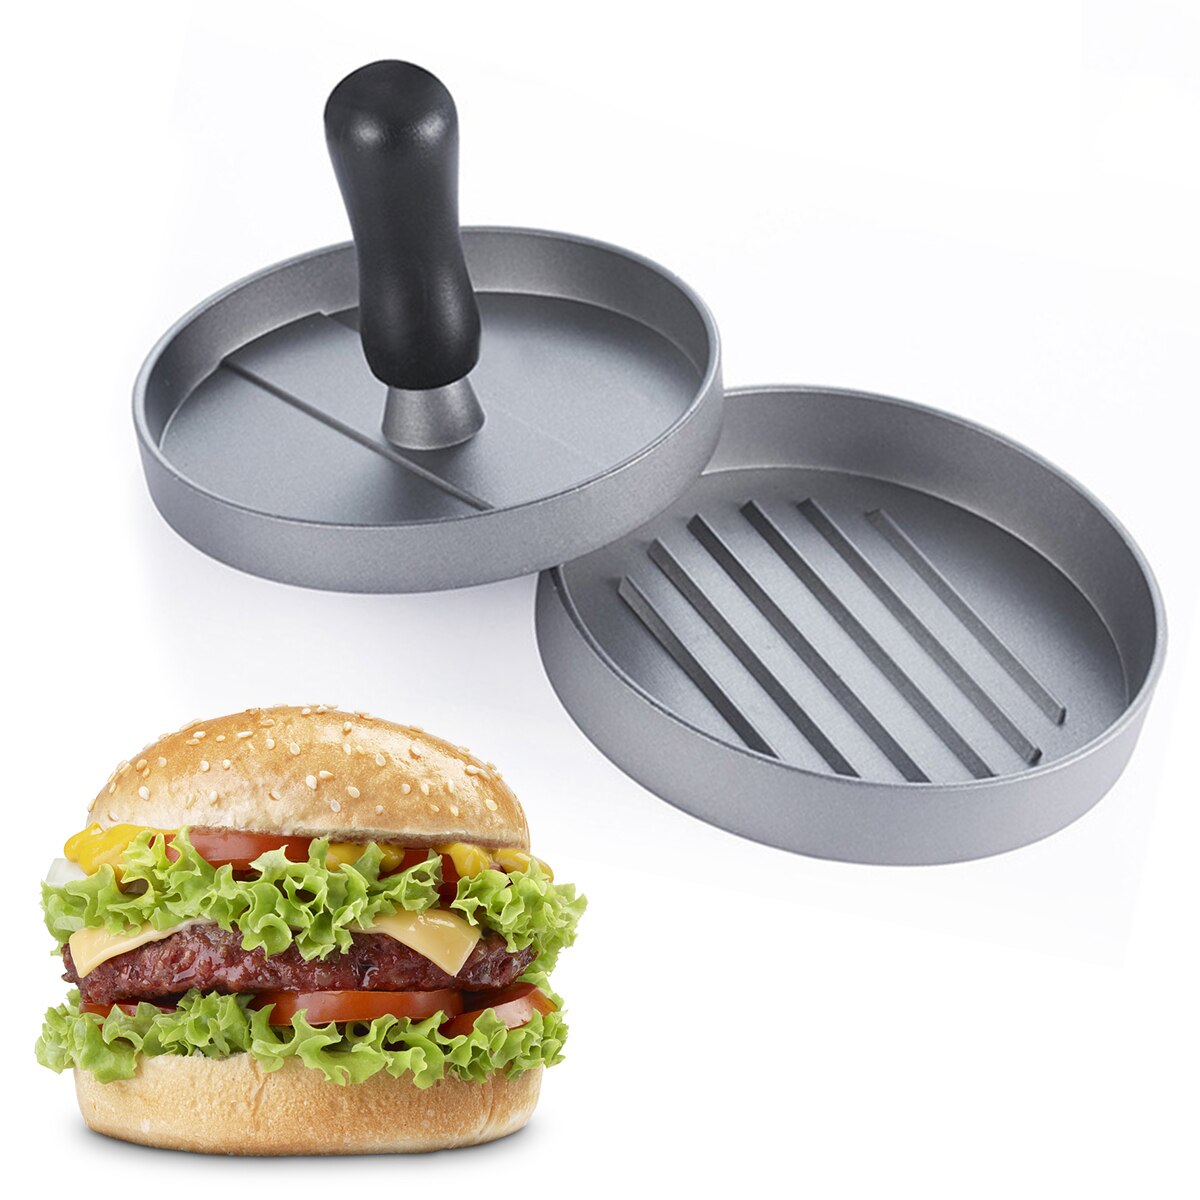 Rund form hamburger presse aluminiumslegering hamburger kød oksekød grill burger presse patty maker skimmel køkken kød værktøjer